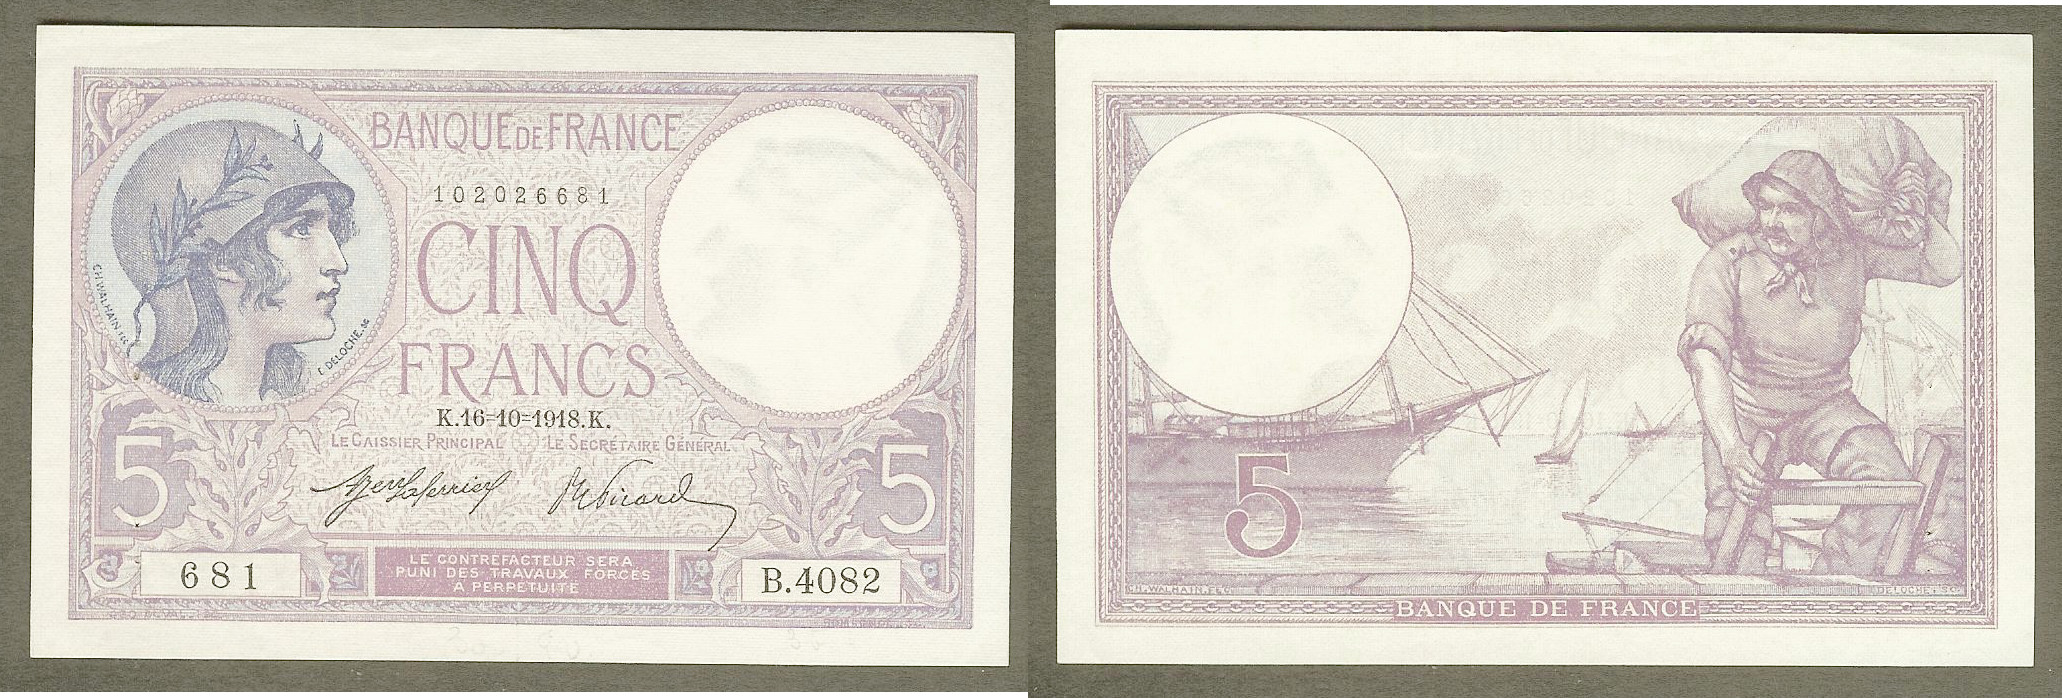 5 Francs VIOLET FRANCE 16.10.1918 SPL